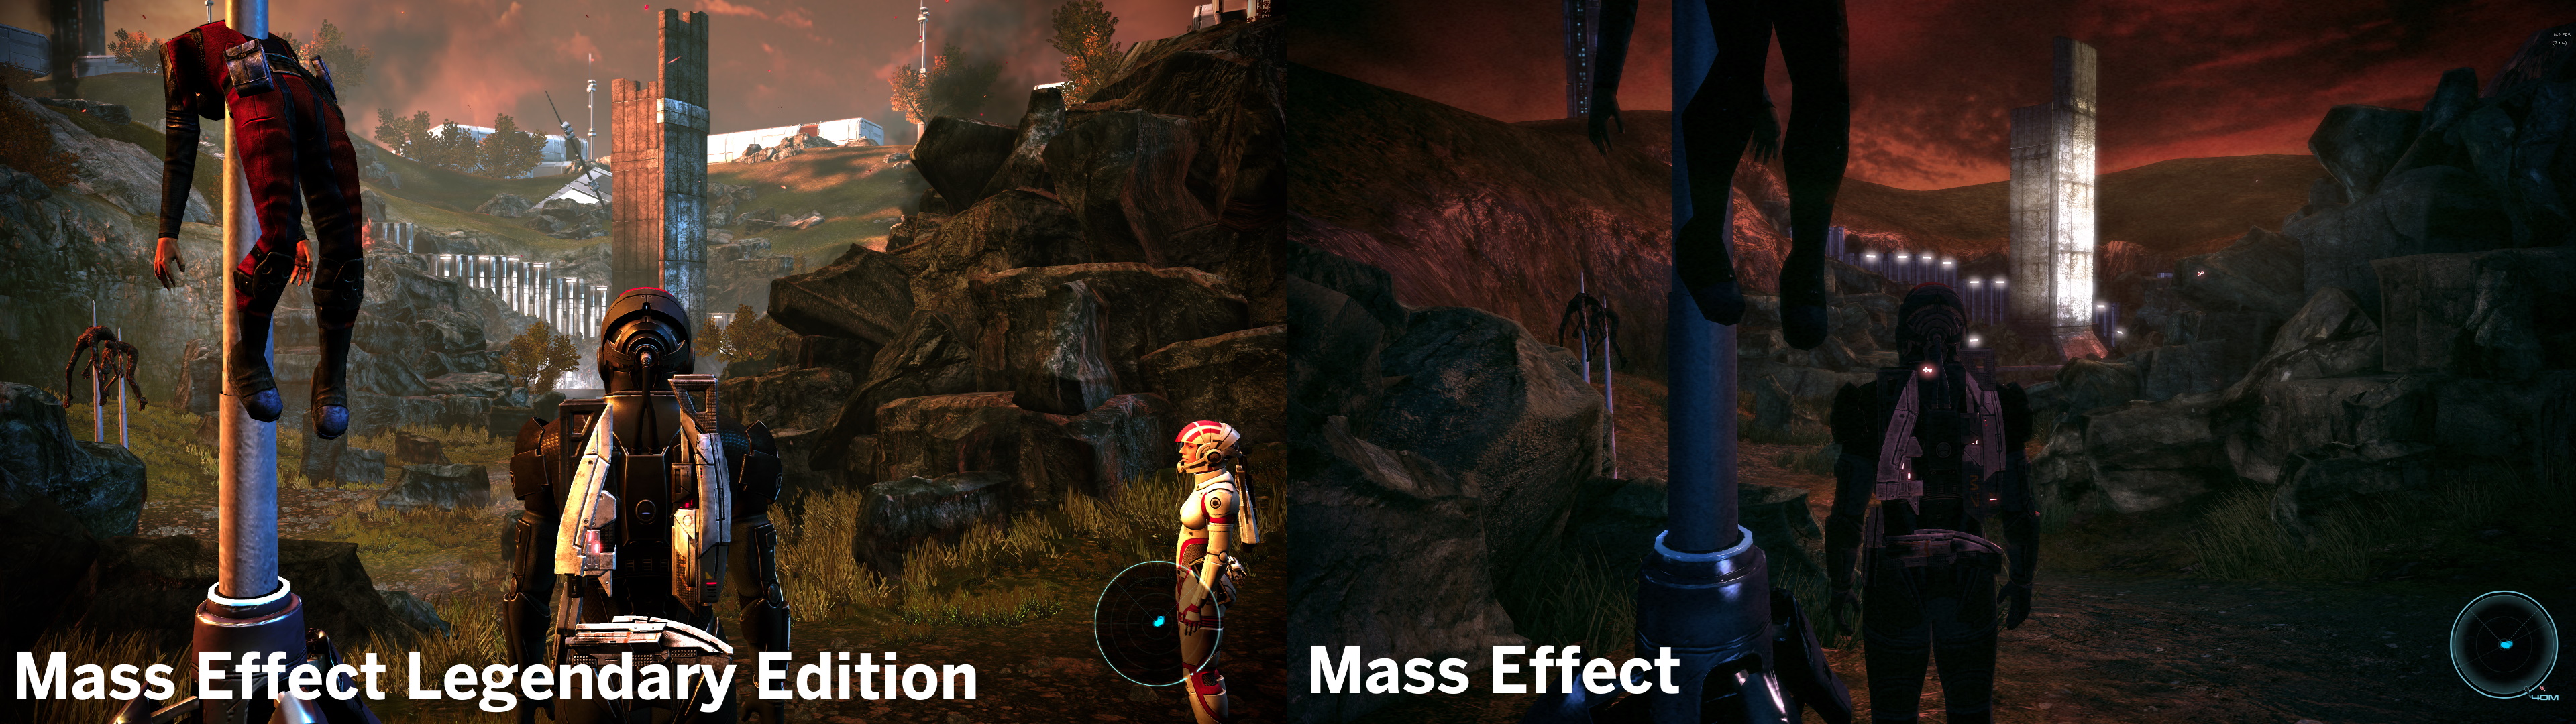 Mass Effect Legendary Edition versus the original Mass Effect